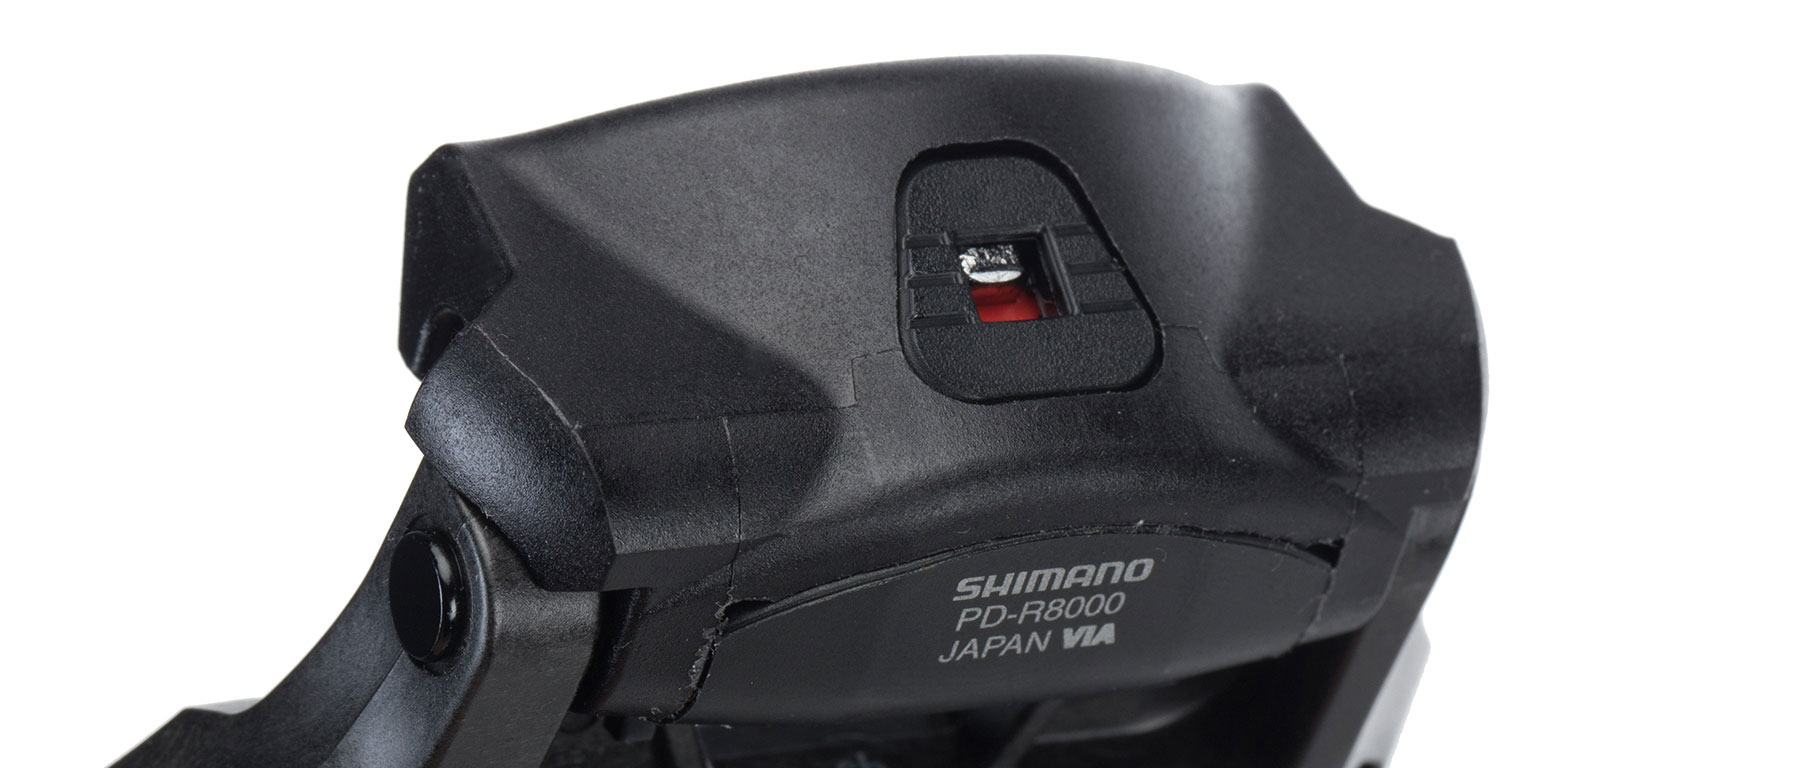 Shimano Ultegra PD-R8000 SPD-SL Pedals